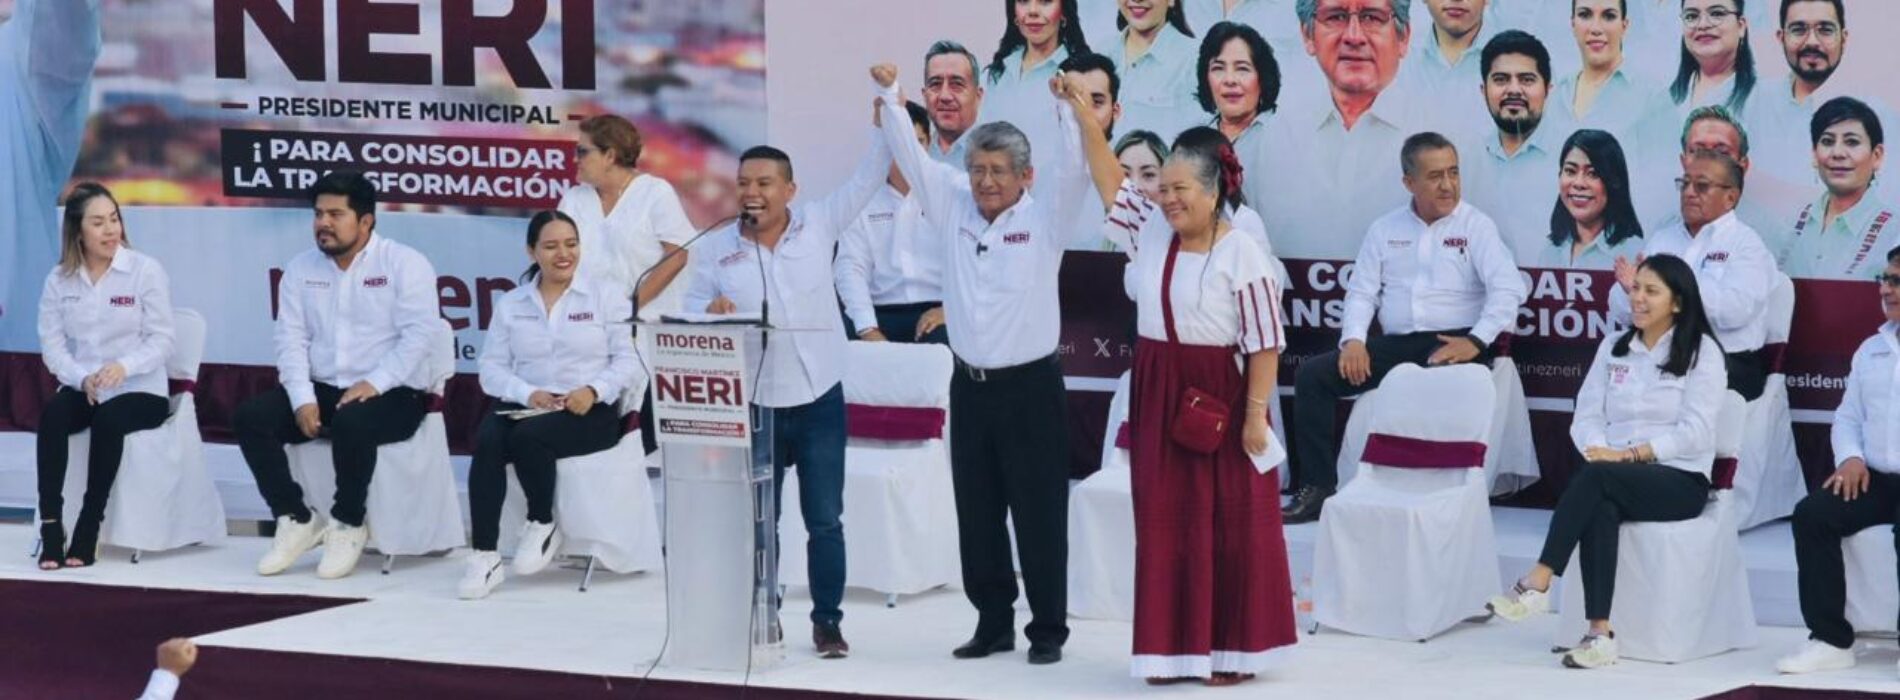 Con lleno total, Arranca campaña Francisco Martínez Neri en la Ciudad de Oaxaca.